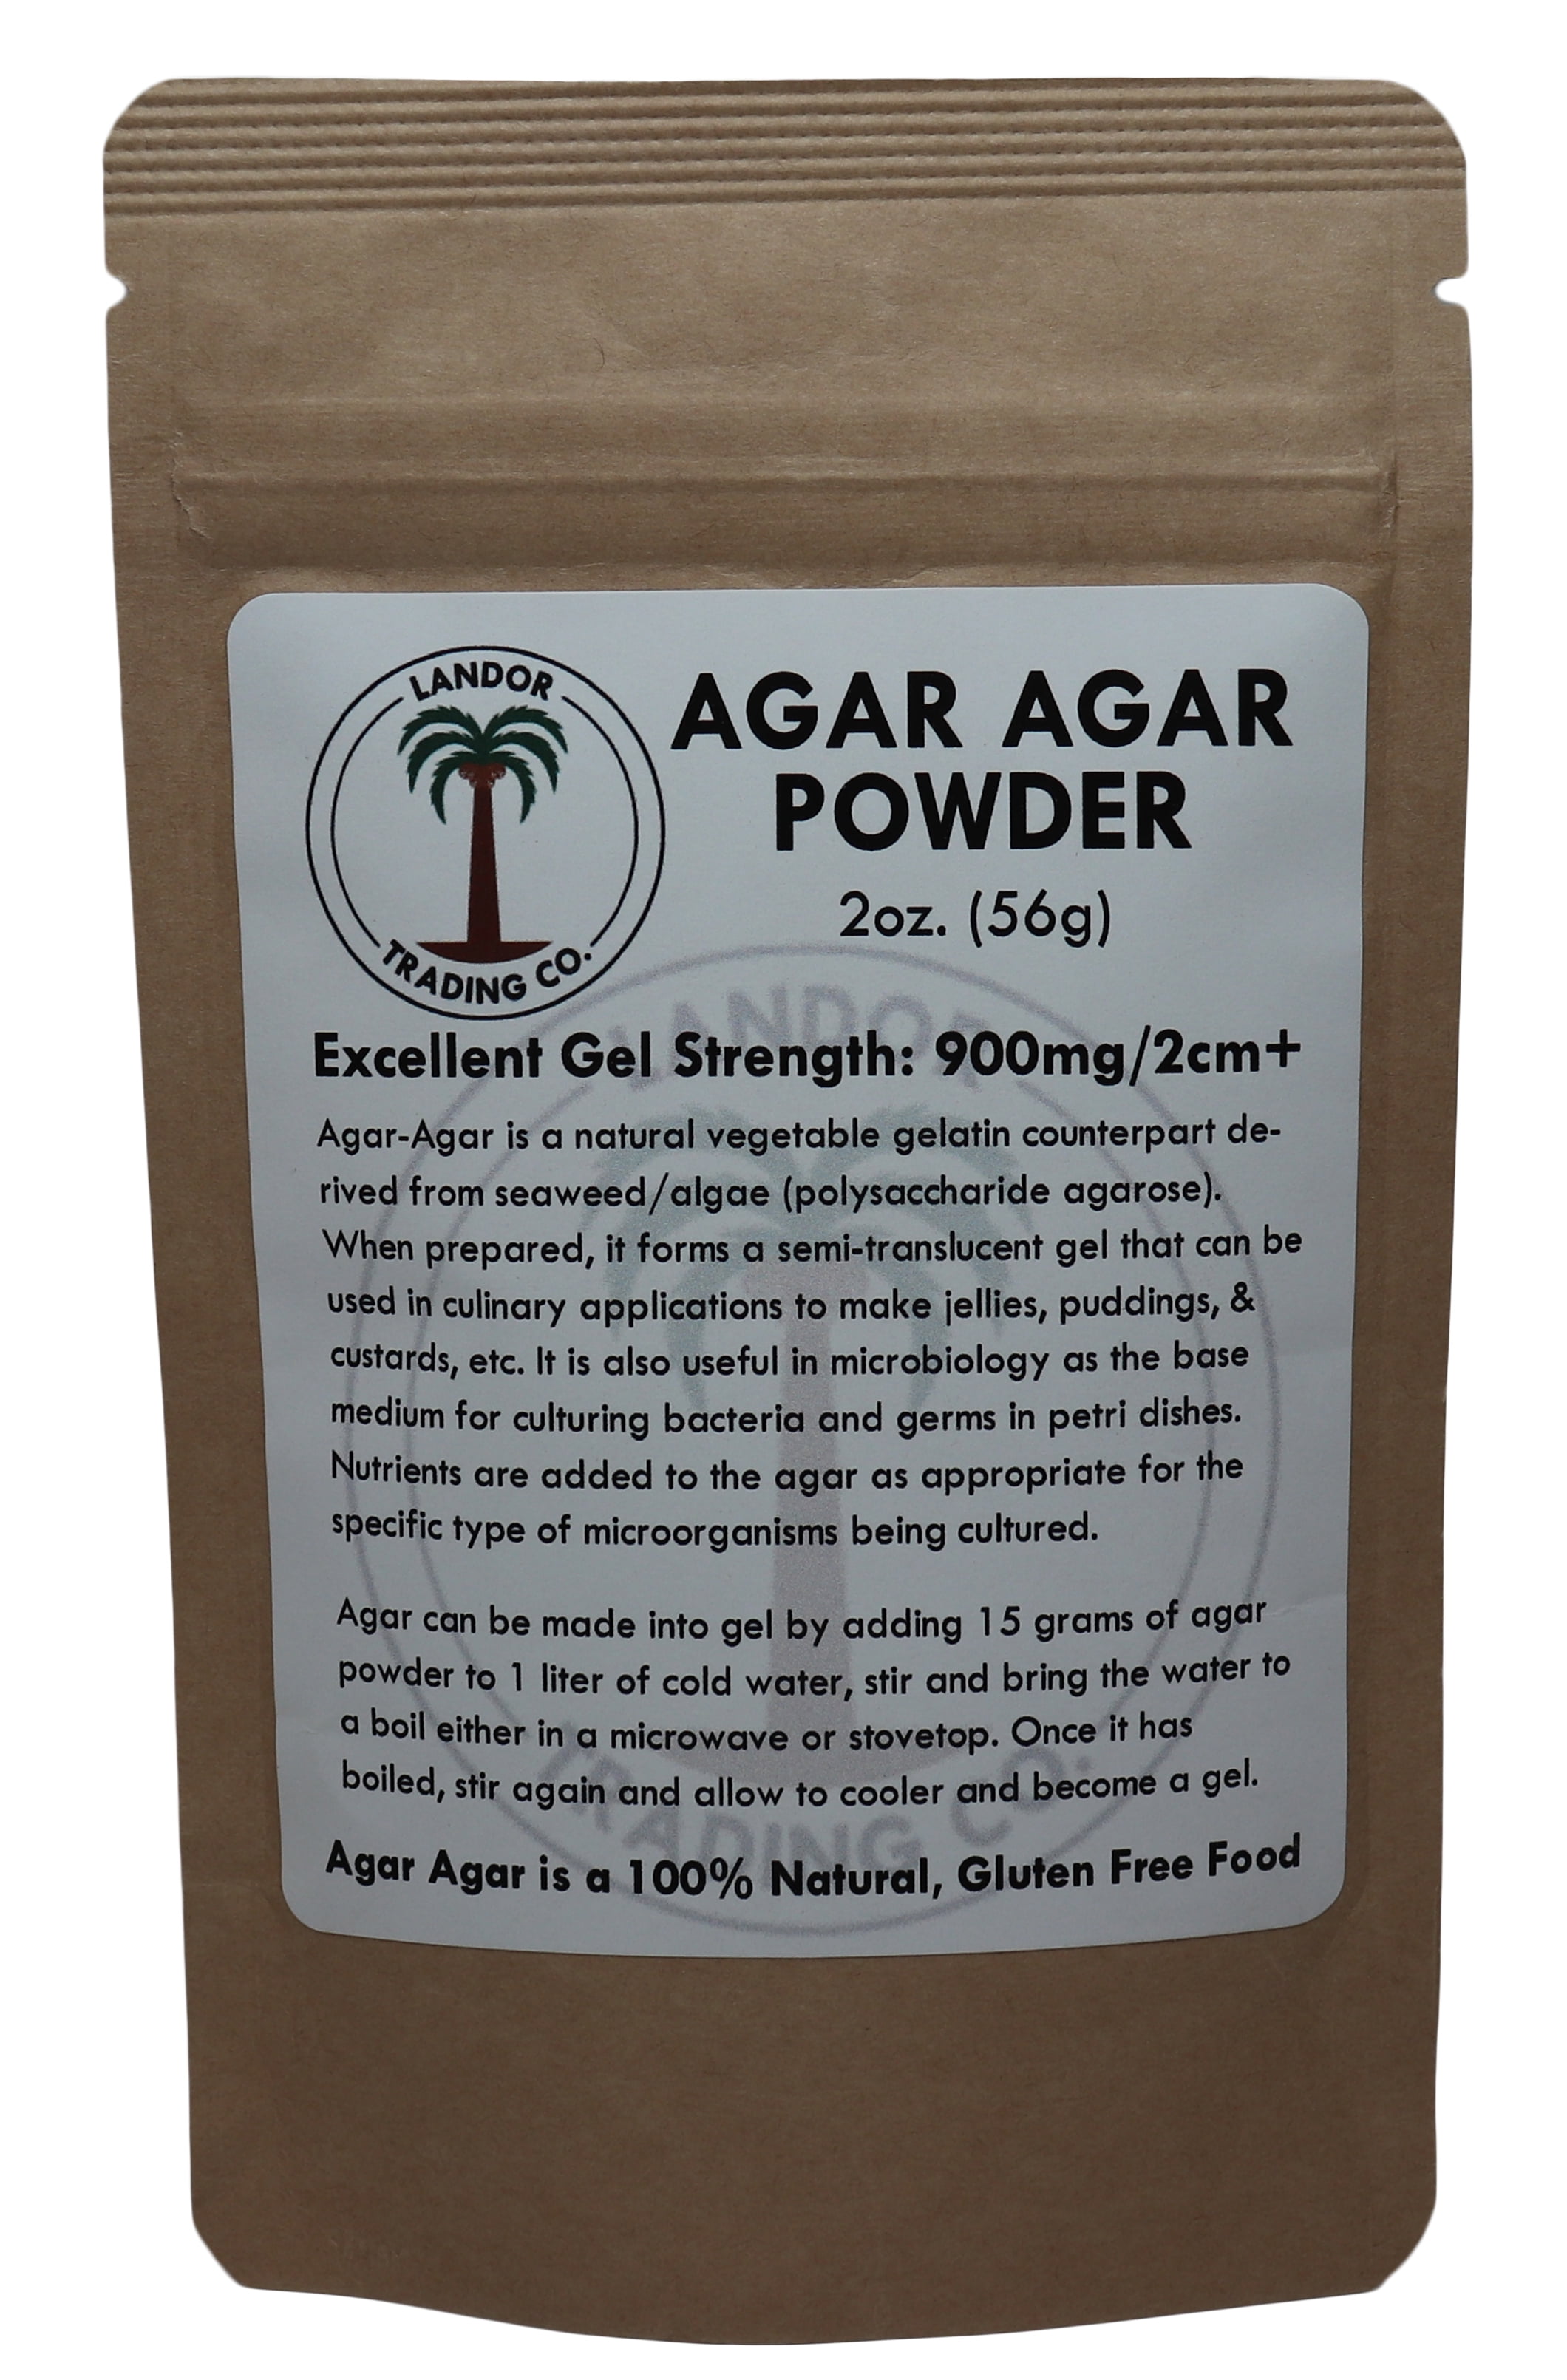 What Is Agar-Agar?